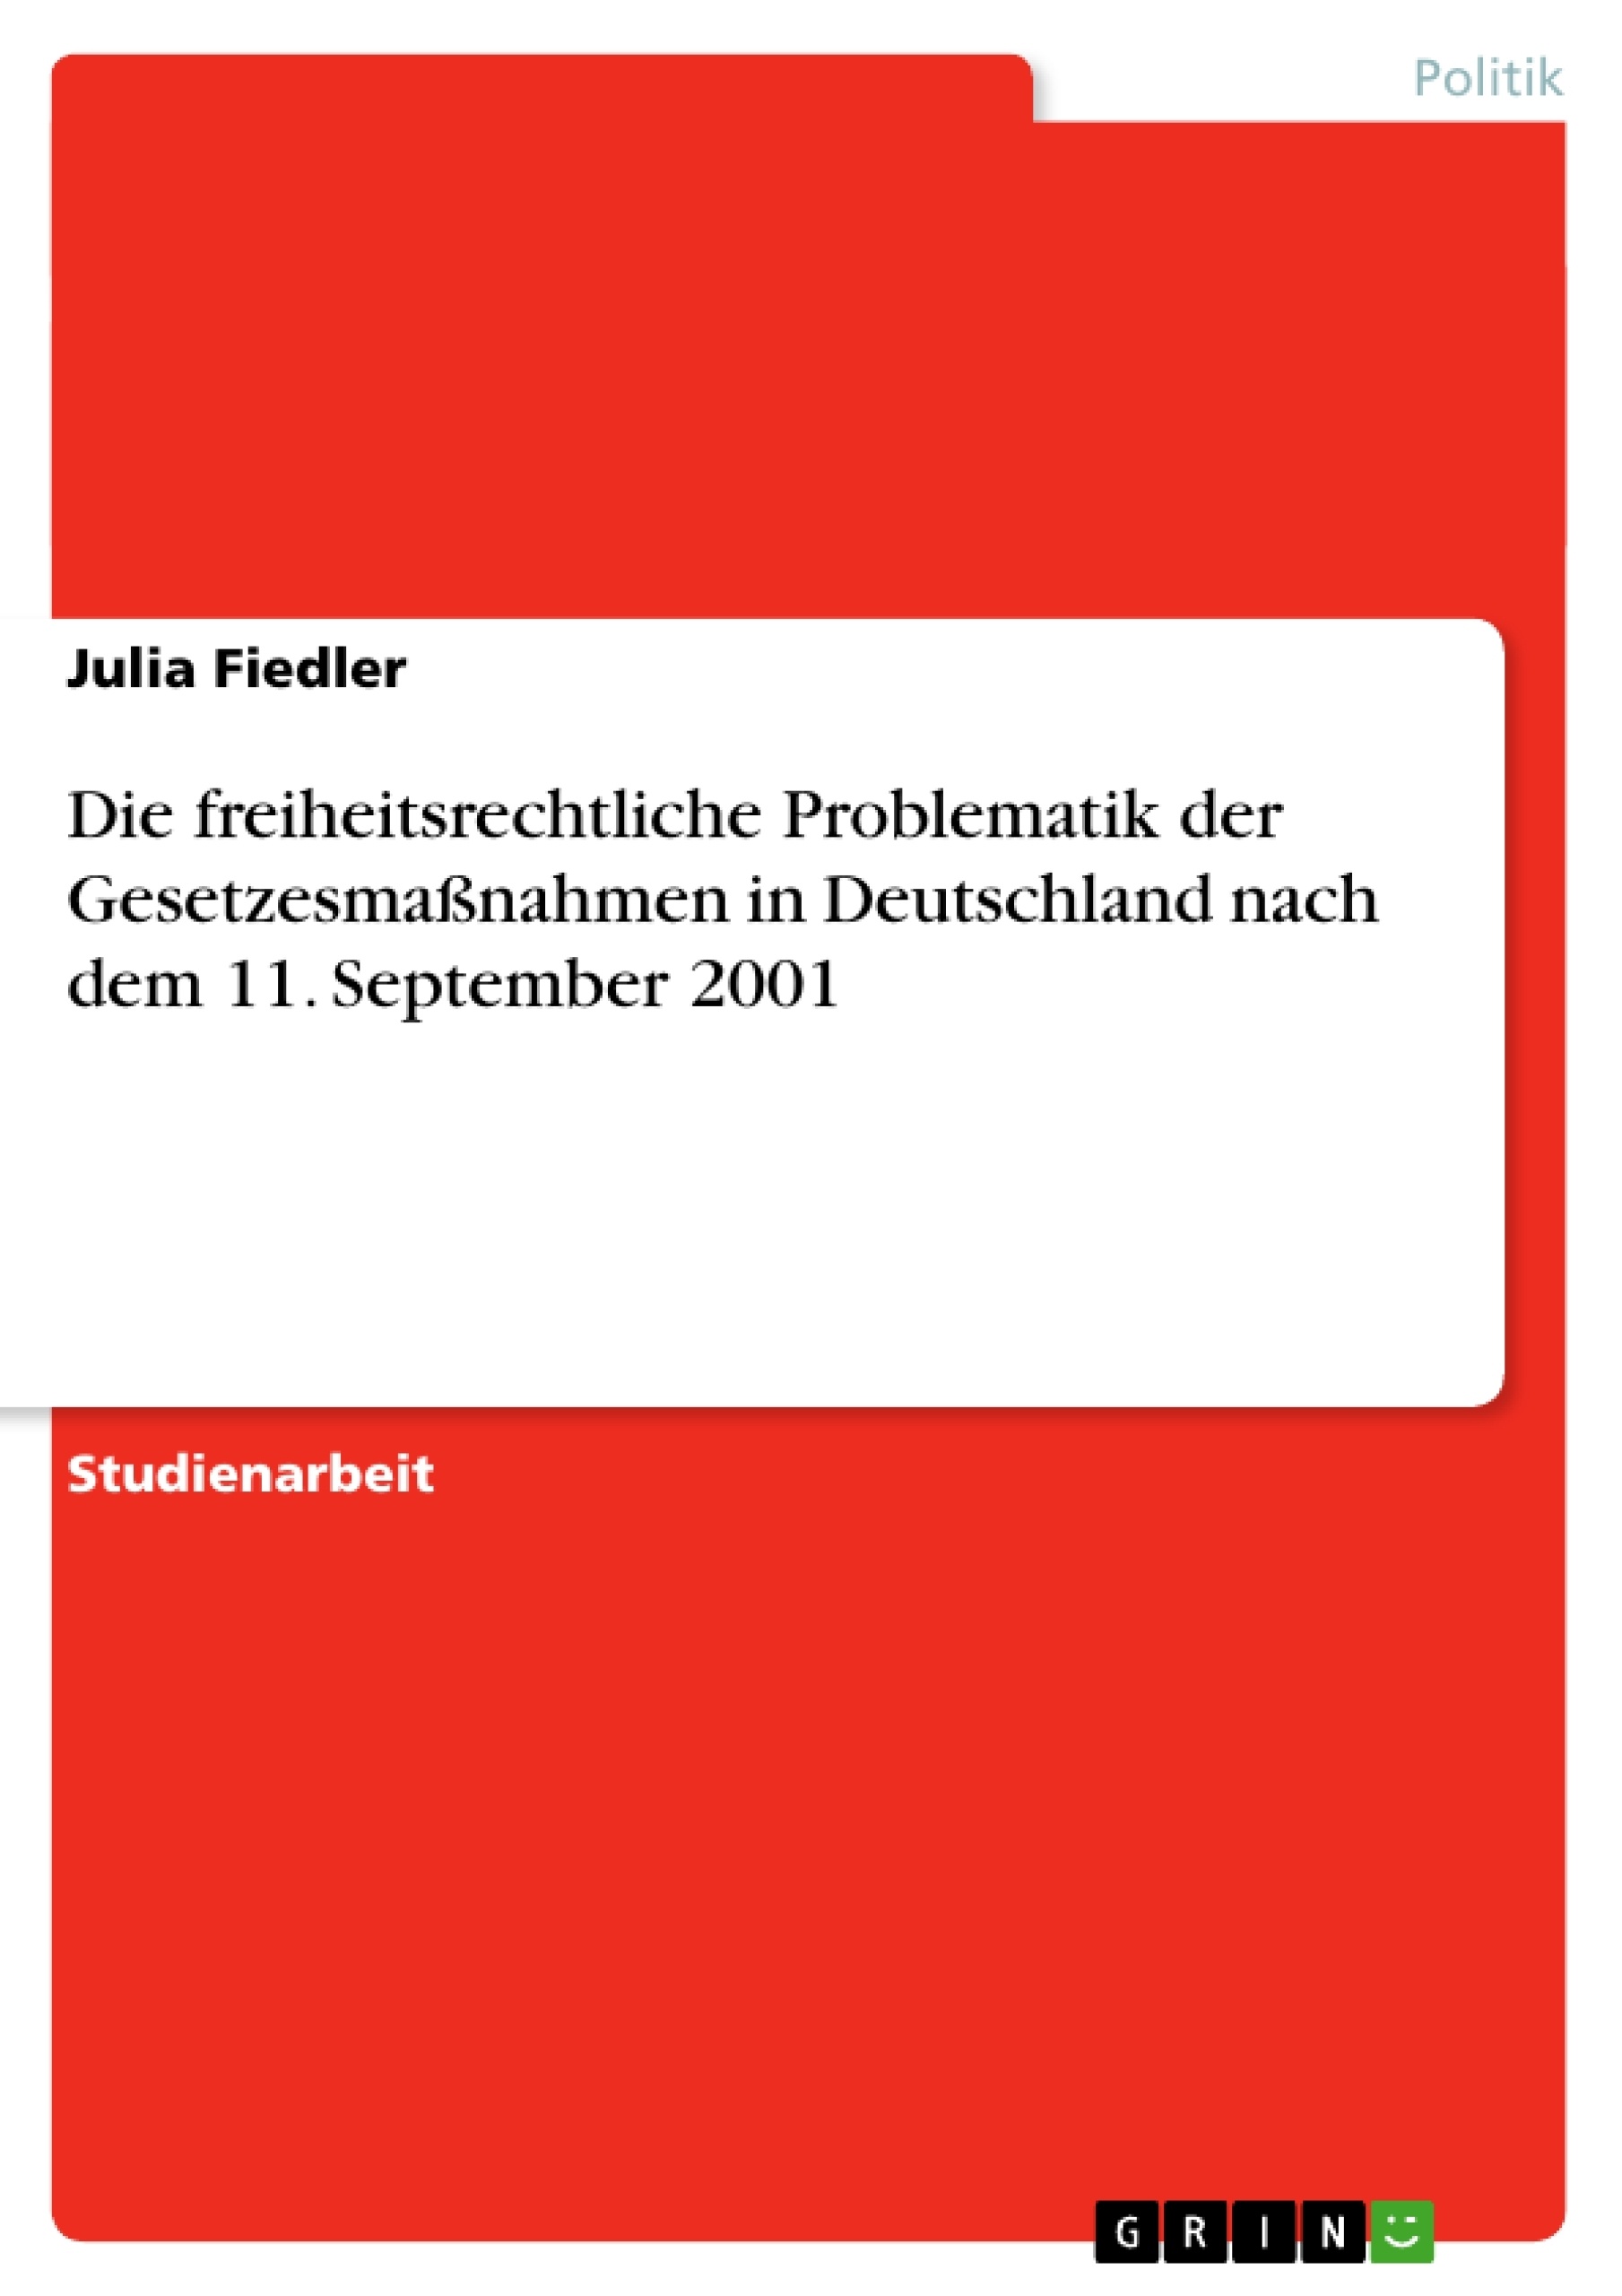 Title: Die freiheitsrechtliche Problematik der Gesetzesmaßnahmen in Deutschland nach dem 11. September 2001